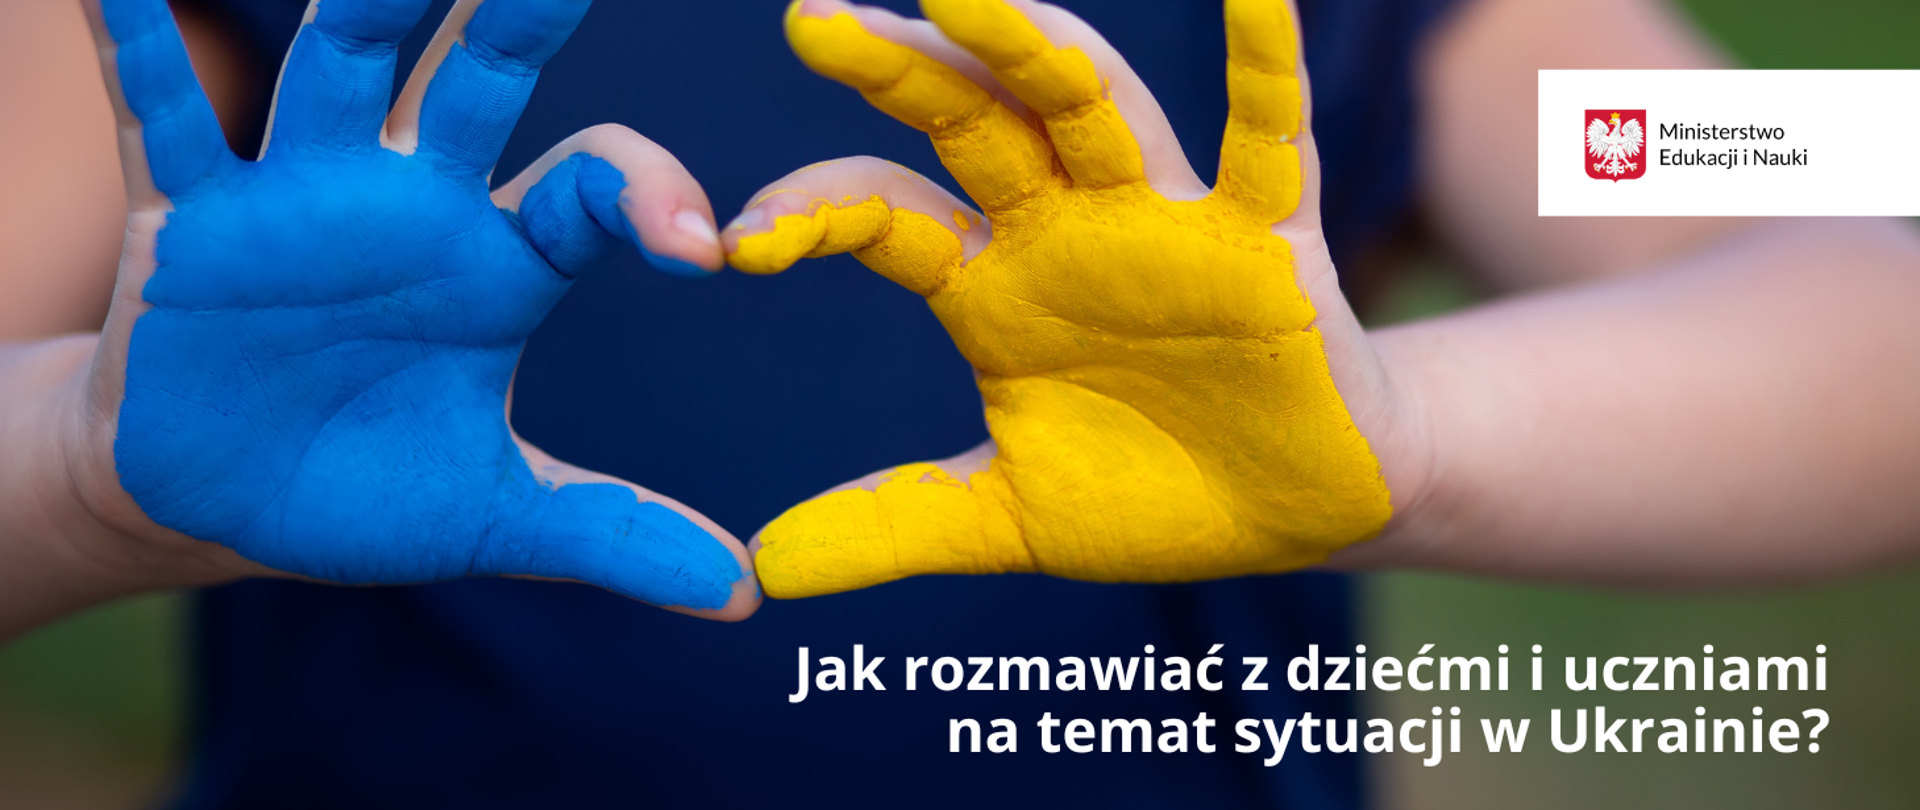 Dłonie złączone w kształt serca i pomalowanie w barwy Ukrainy. Obok napis: "Jak rozmawiać z dziećmi i uczniami na temat sytuacji w Ukrainie – rekomendacje dla nauczycieli i pedagogów szkolnych"